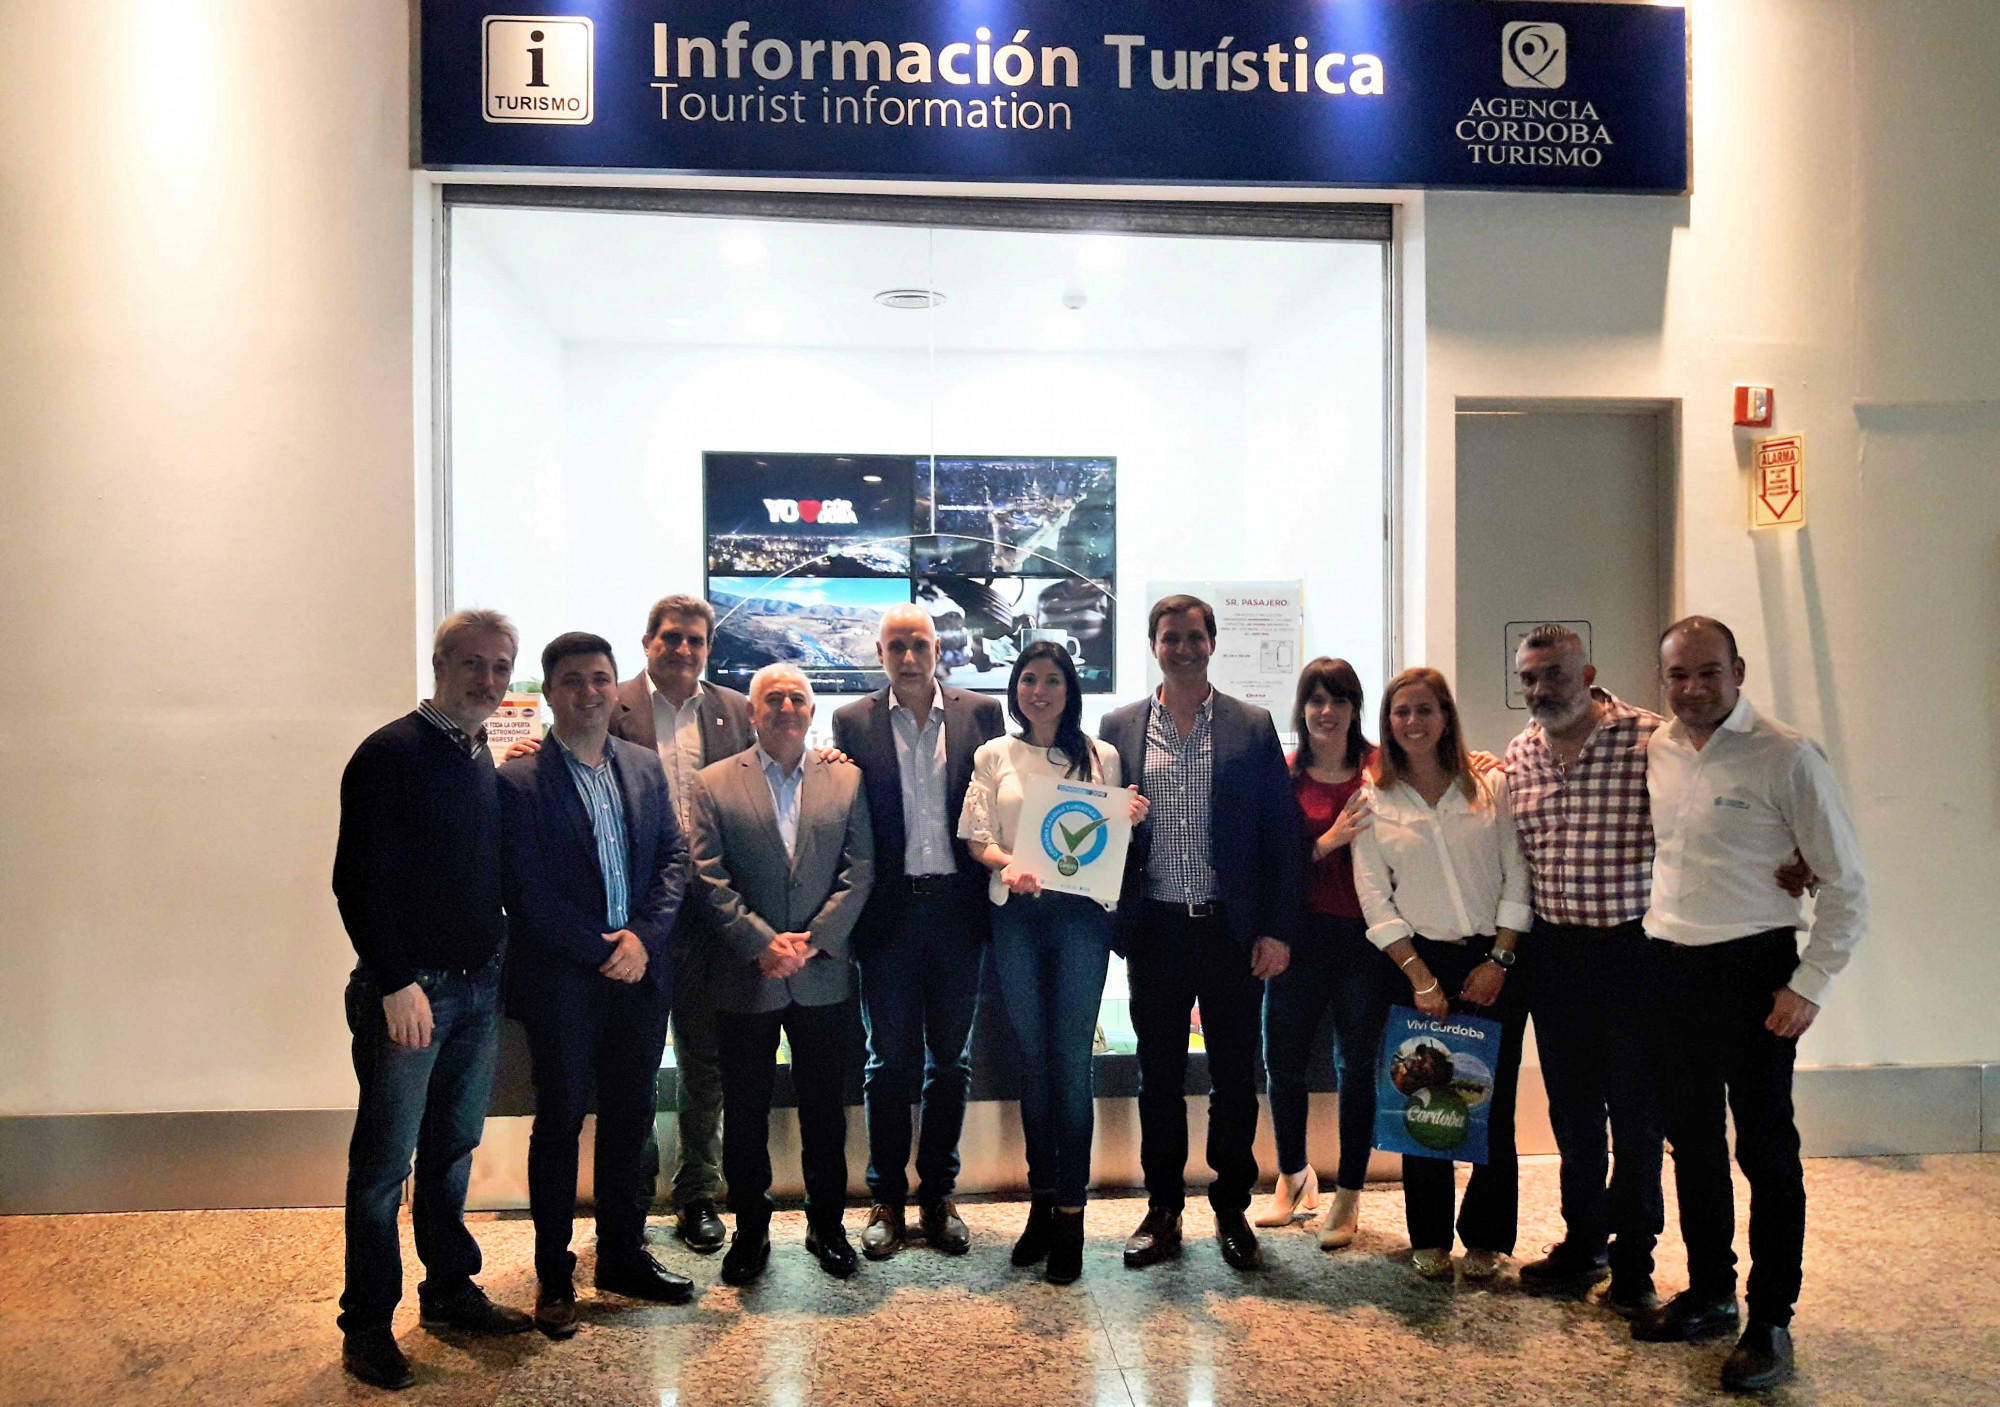 La Agencia Córdoba Turismo hizo entrega de distinción en calidad a oficinas de información turística